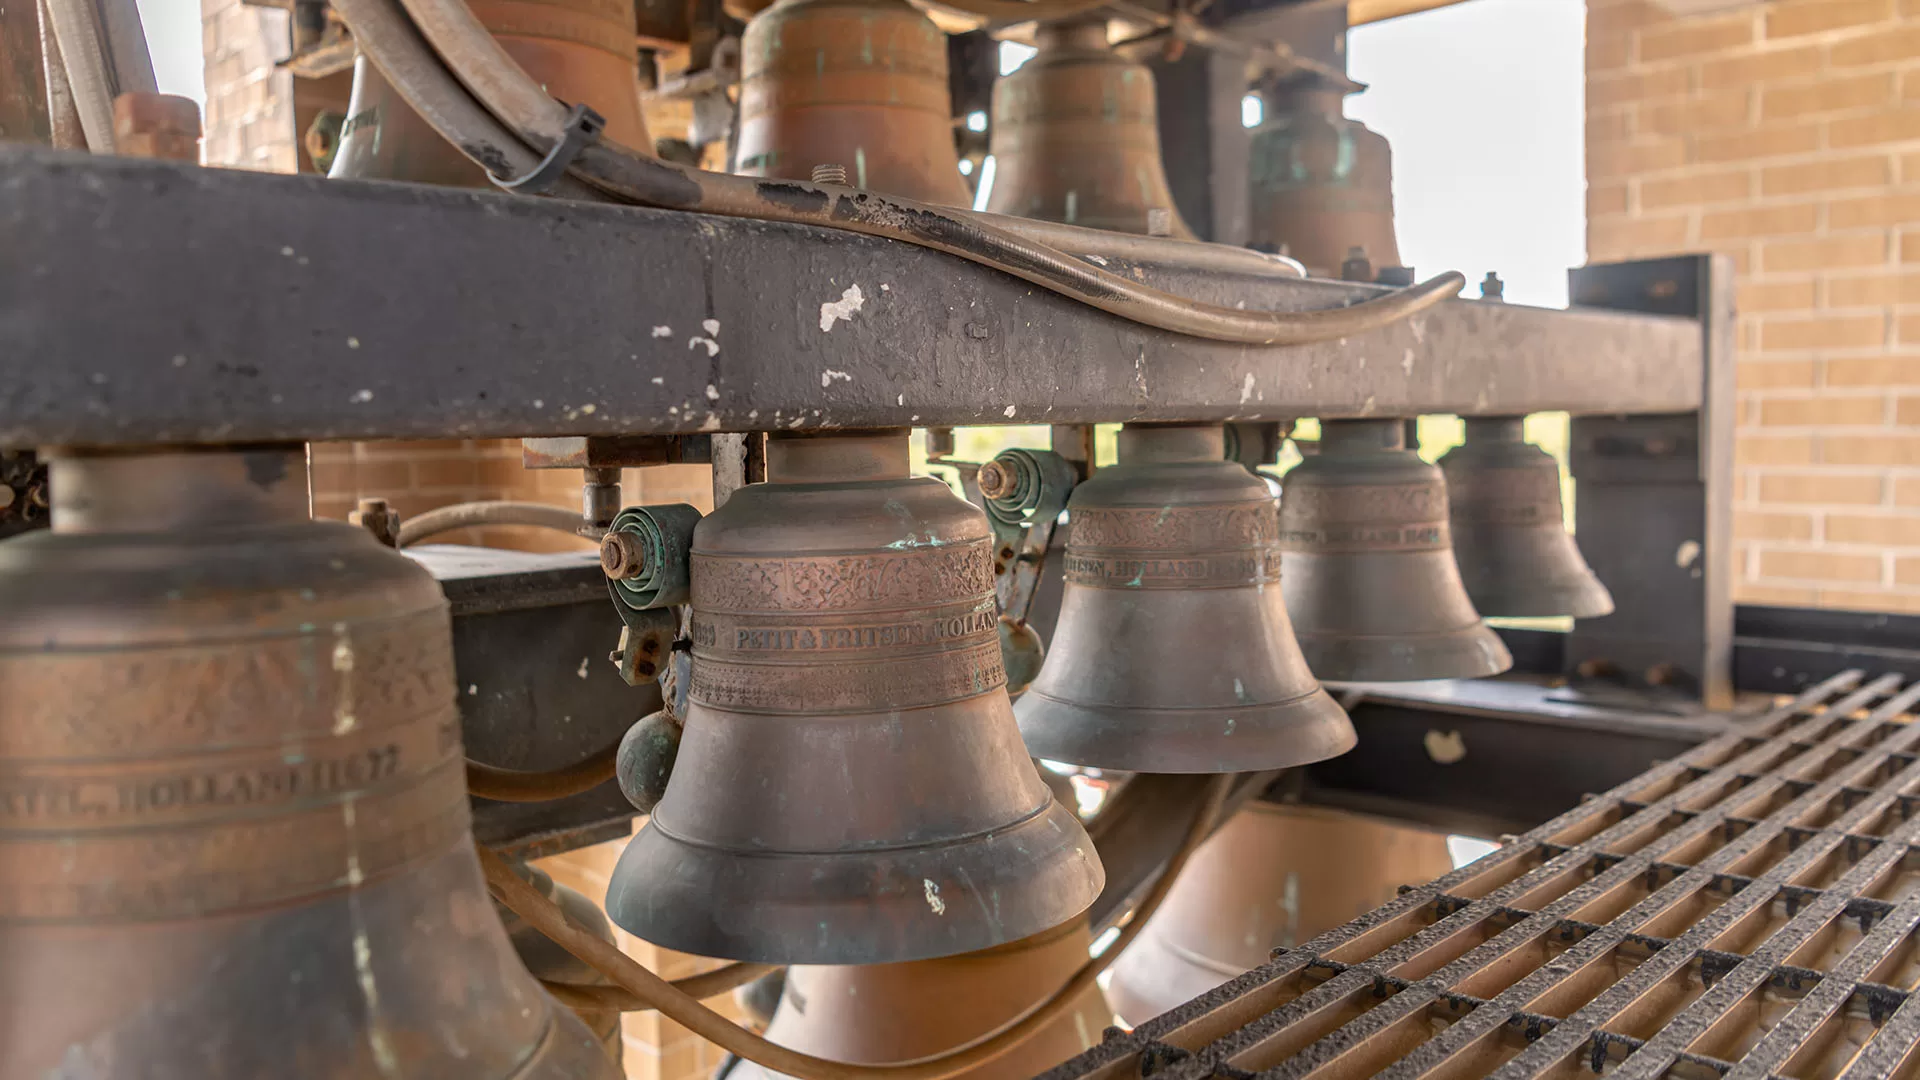 The Carillon